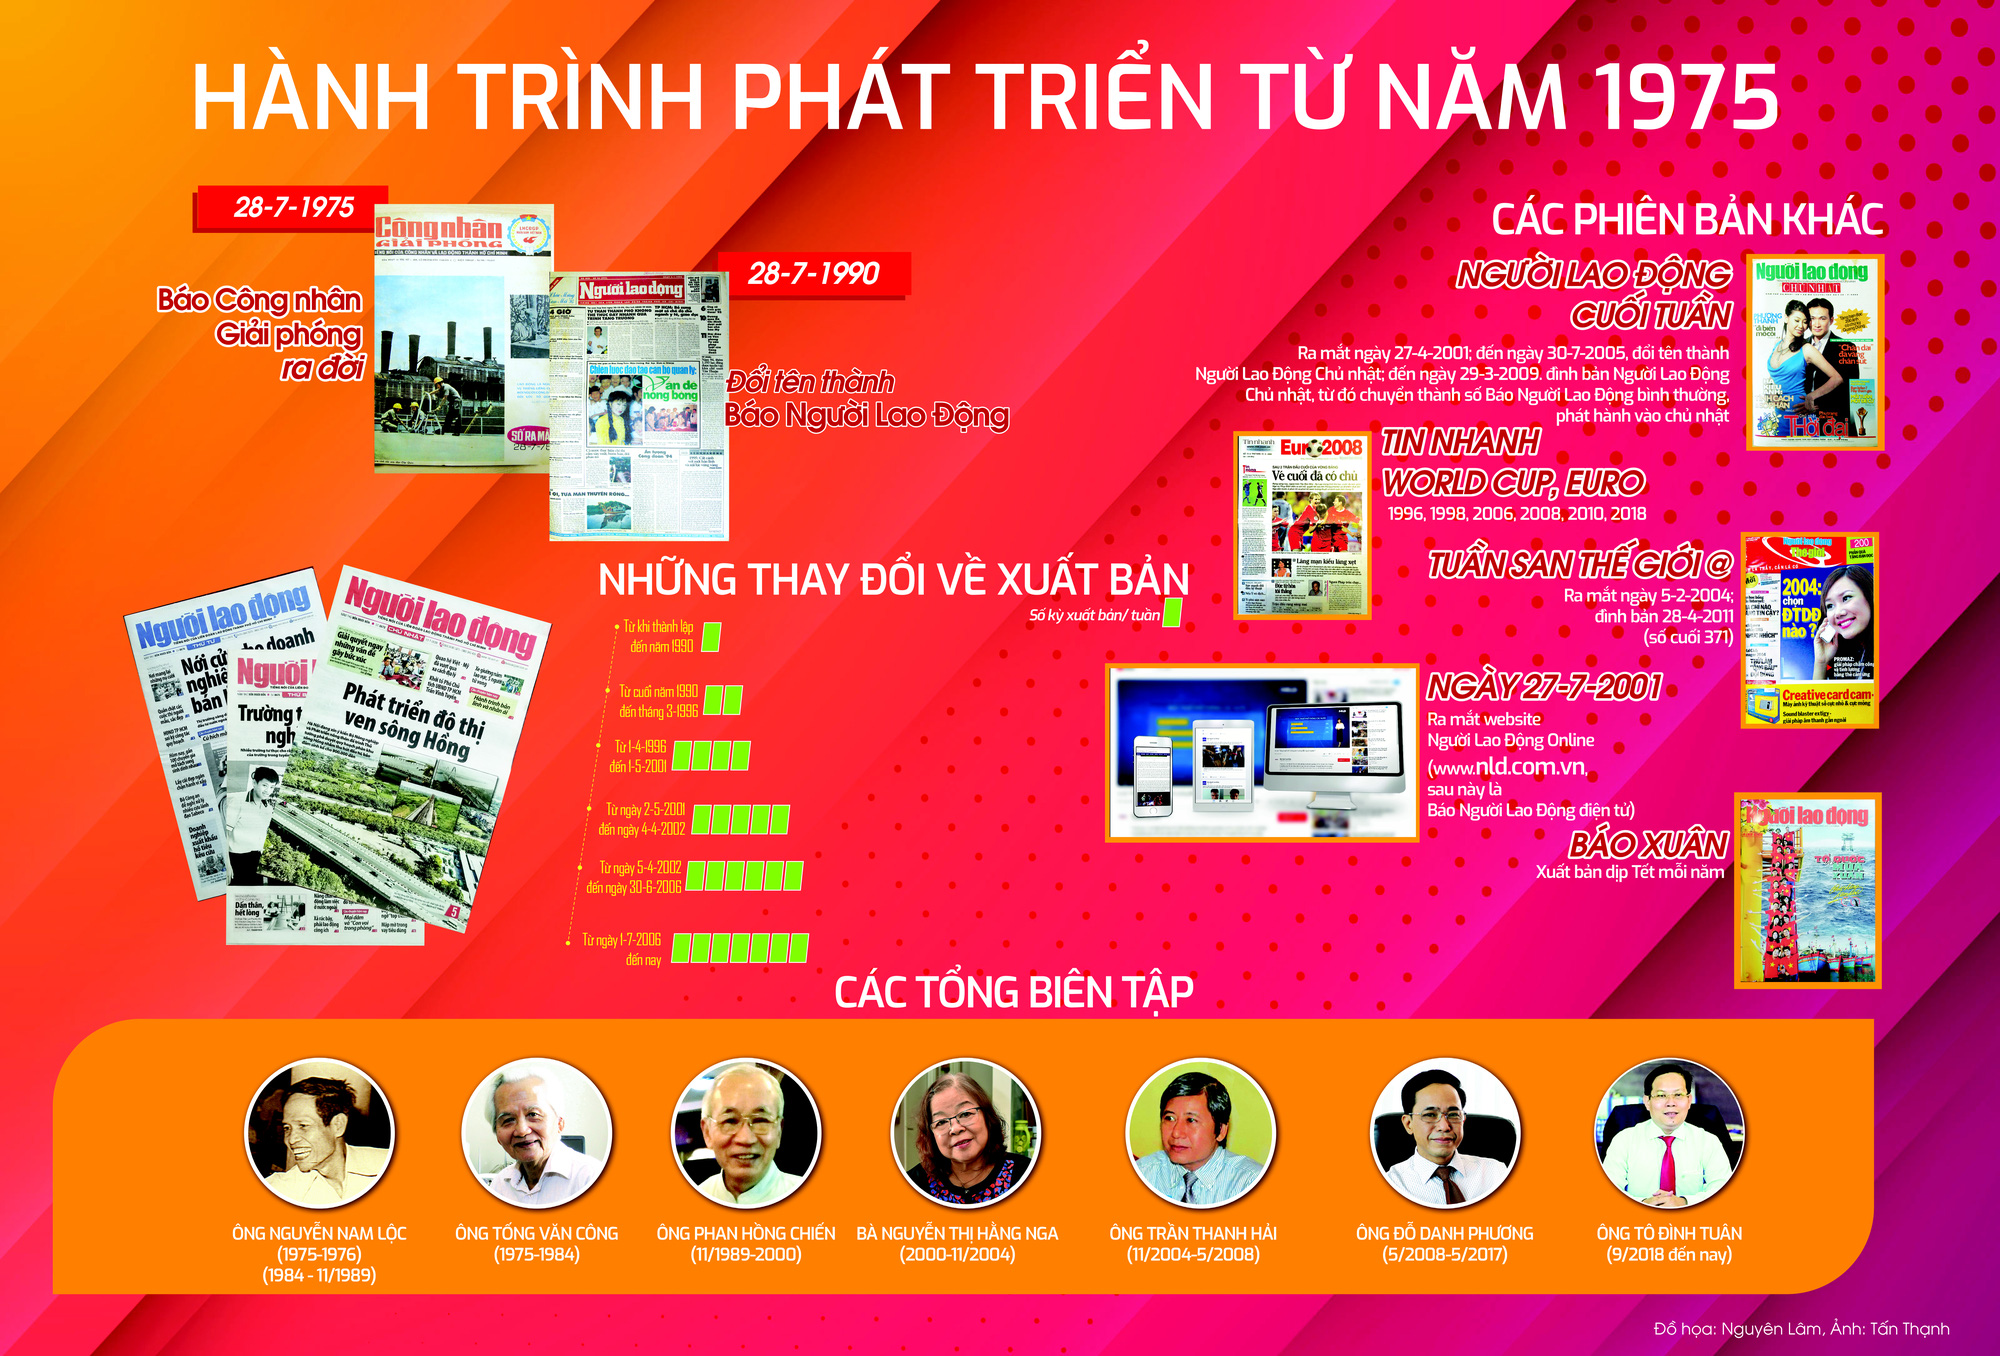 Hành trình phát triển Báo Người Lao Động từ năm 1975 - Ảnh 1.